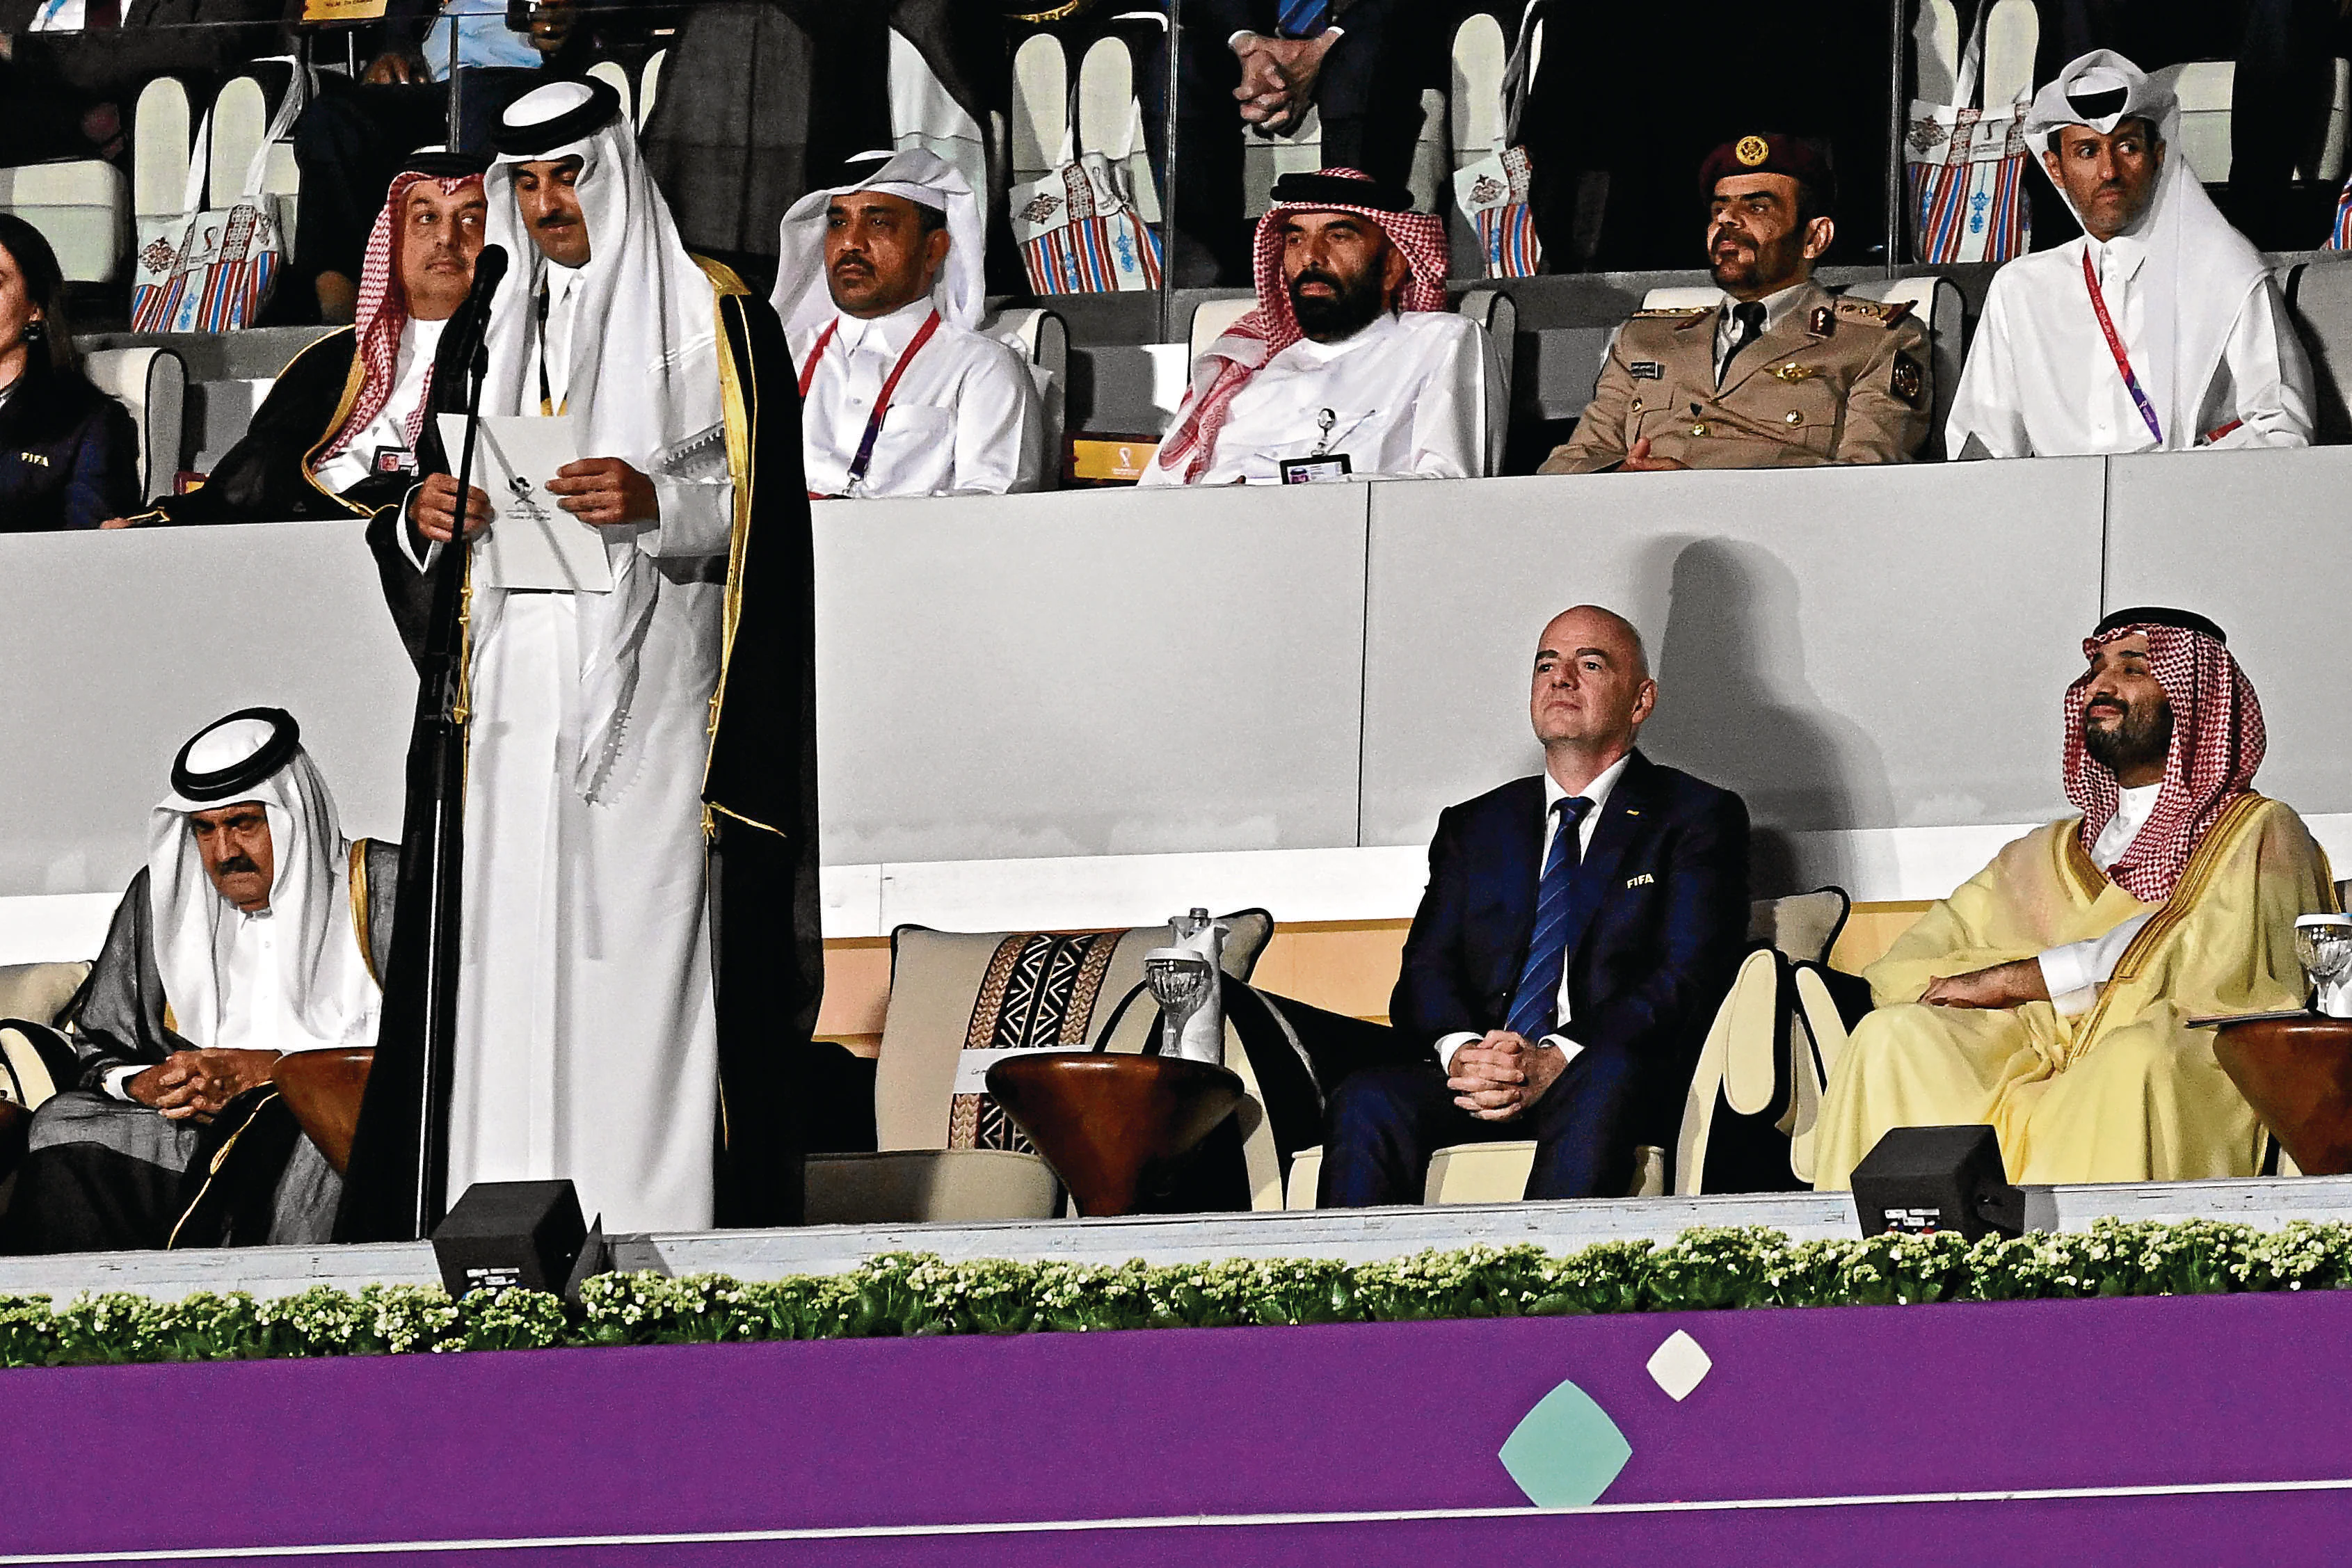 La primera victoria política: el príncipe de Arabia Saudí en el palco